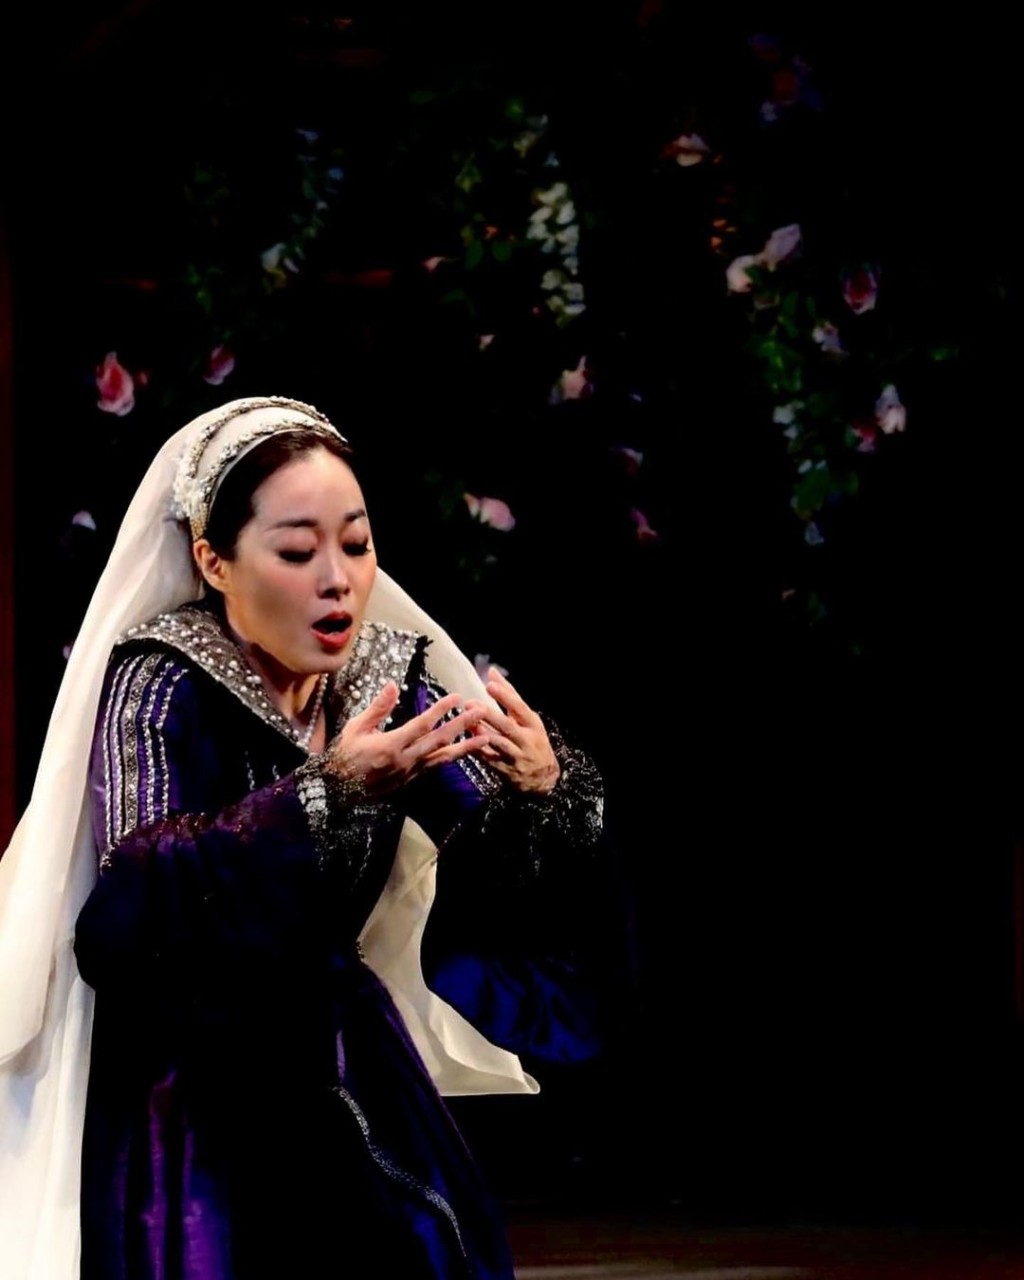 去年李尚恩曾來港演出「香港大會堂60周年誌慶節目」音樂劇《血灑英廷》。